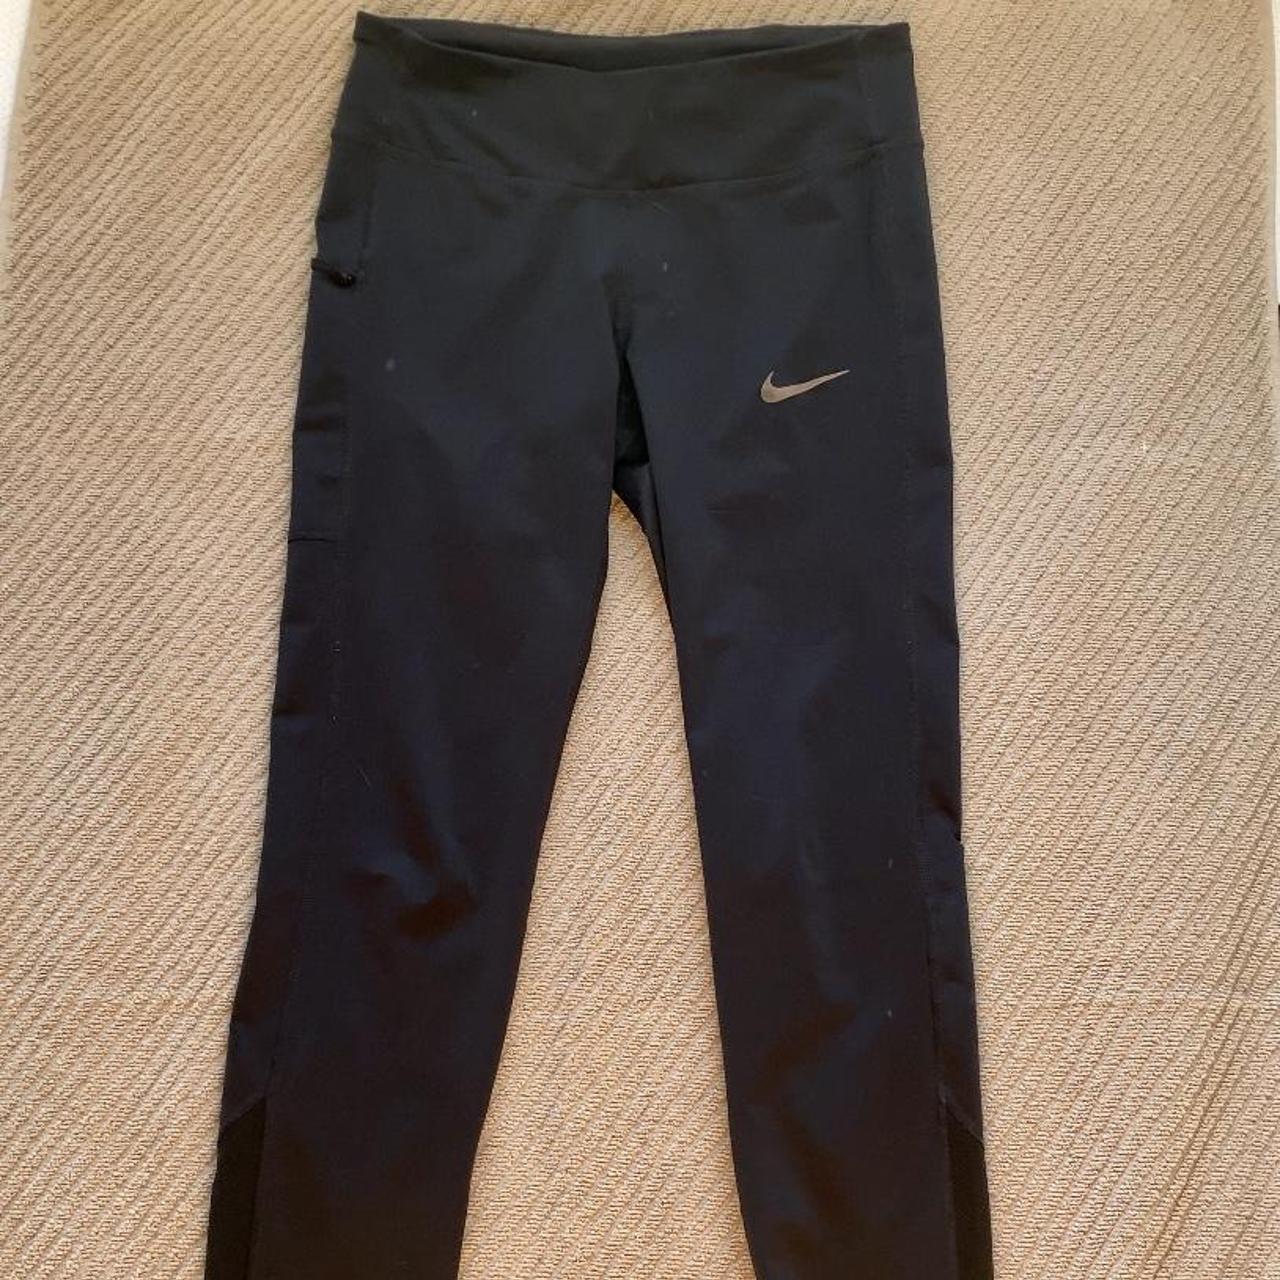 Nike dri-fit tights - Small size - Black - Pocket - Depop